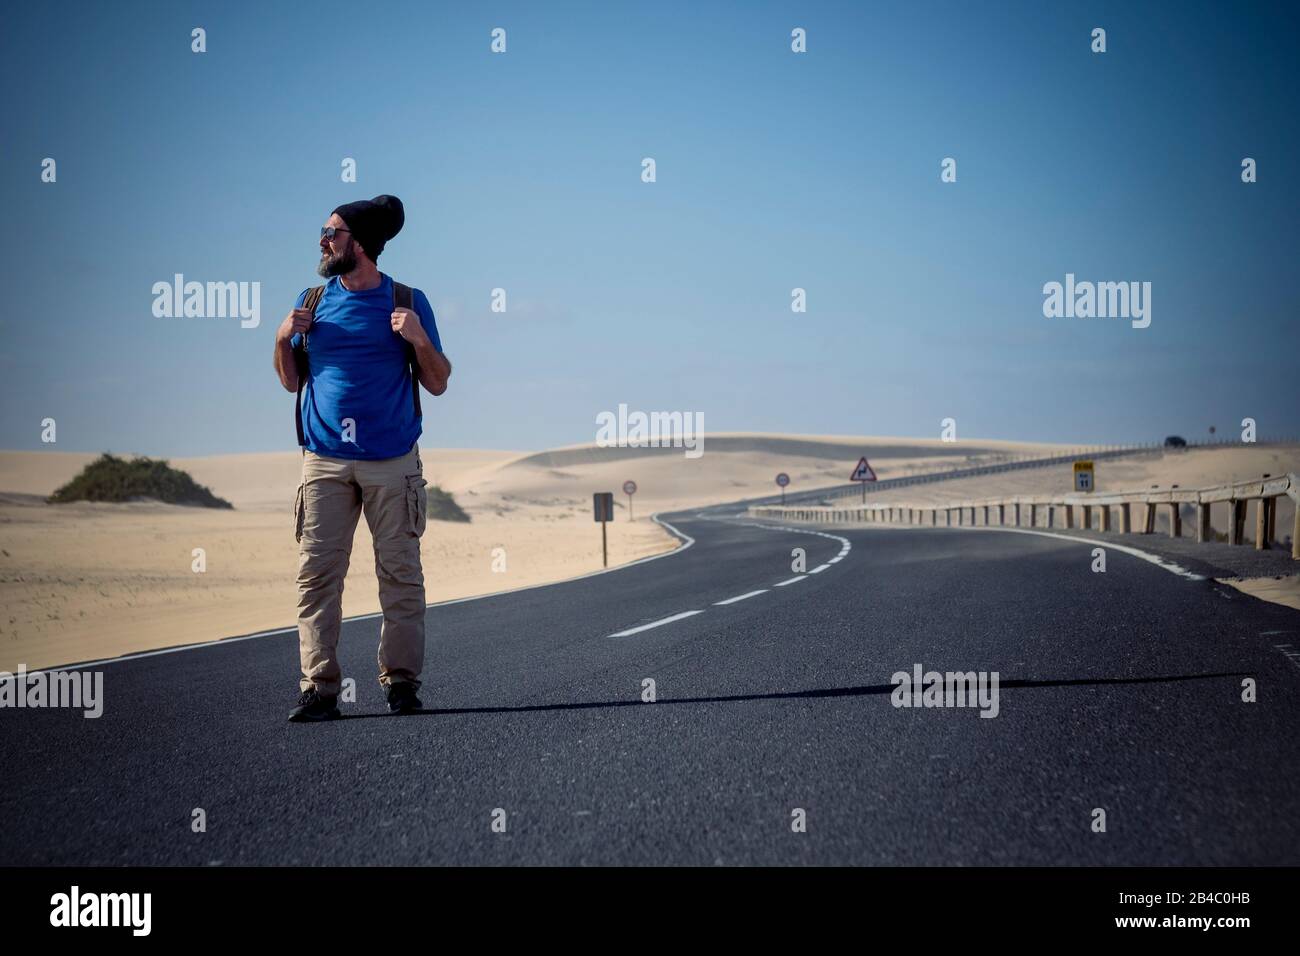 Image colorée de l'homme avec sac à dos de voyage marche au milieu de la route avec des dunes du désert autour - concept de voyageur alternatif pour les vacances d'été ou le style de vie au bonheur Banque D'Images